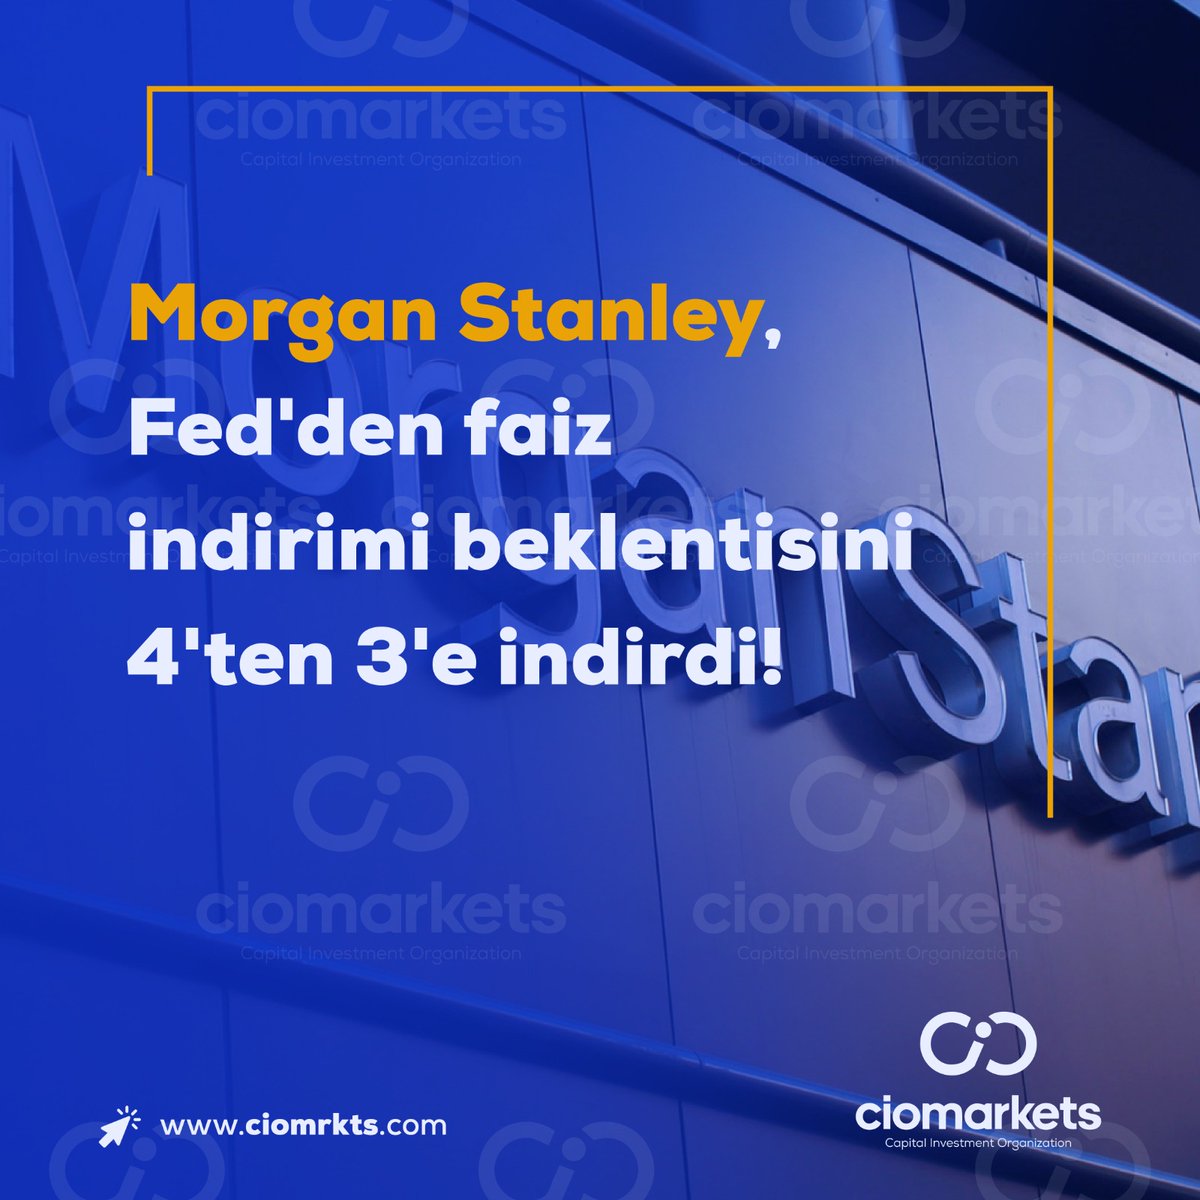 Morgan Stanley, Fed'den faiz indirimi beklentisini 4'ten 3'e indirdi.

#Fed #faiz #morganstanley